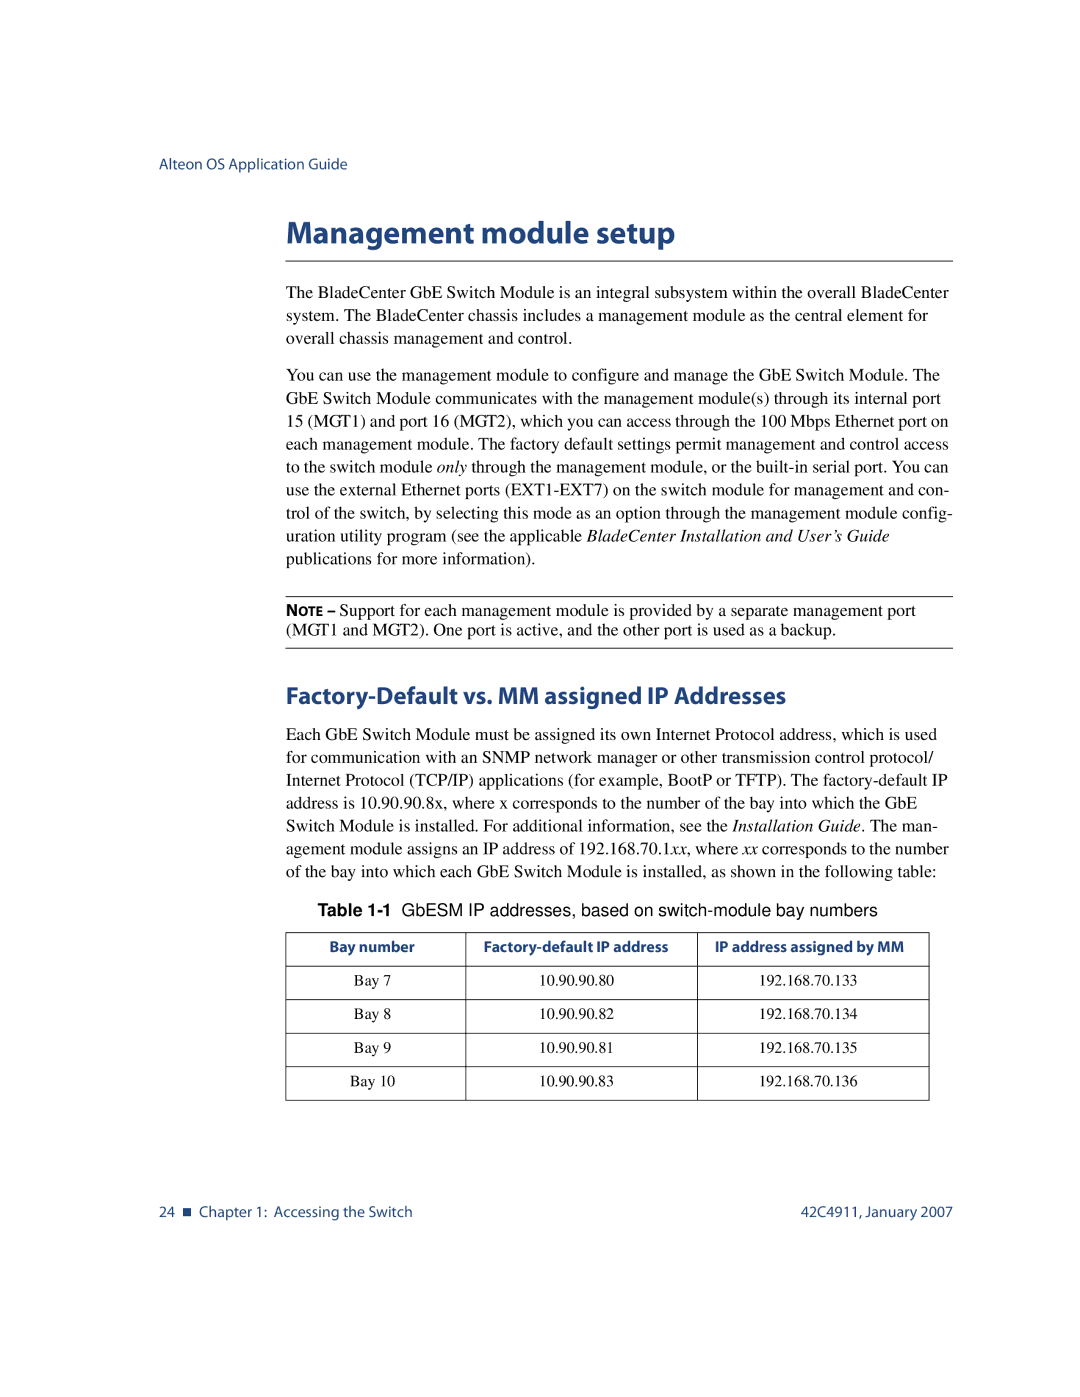 Nortel Networks 42C4911 manual Management module setup, Factory-Default vs. MM assigned IP Addresses 